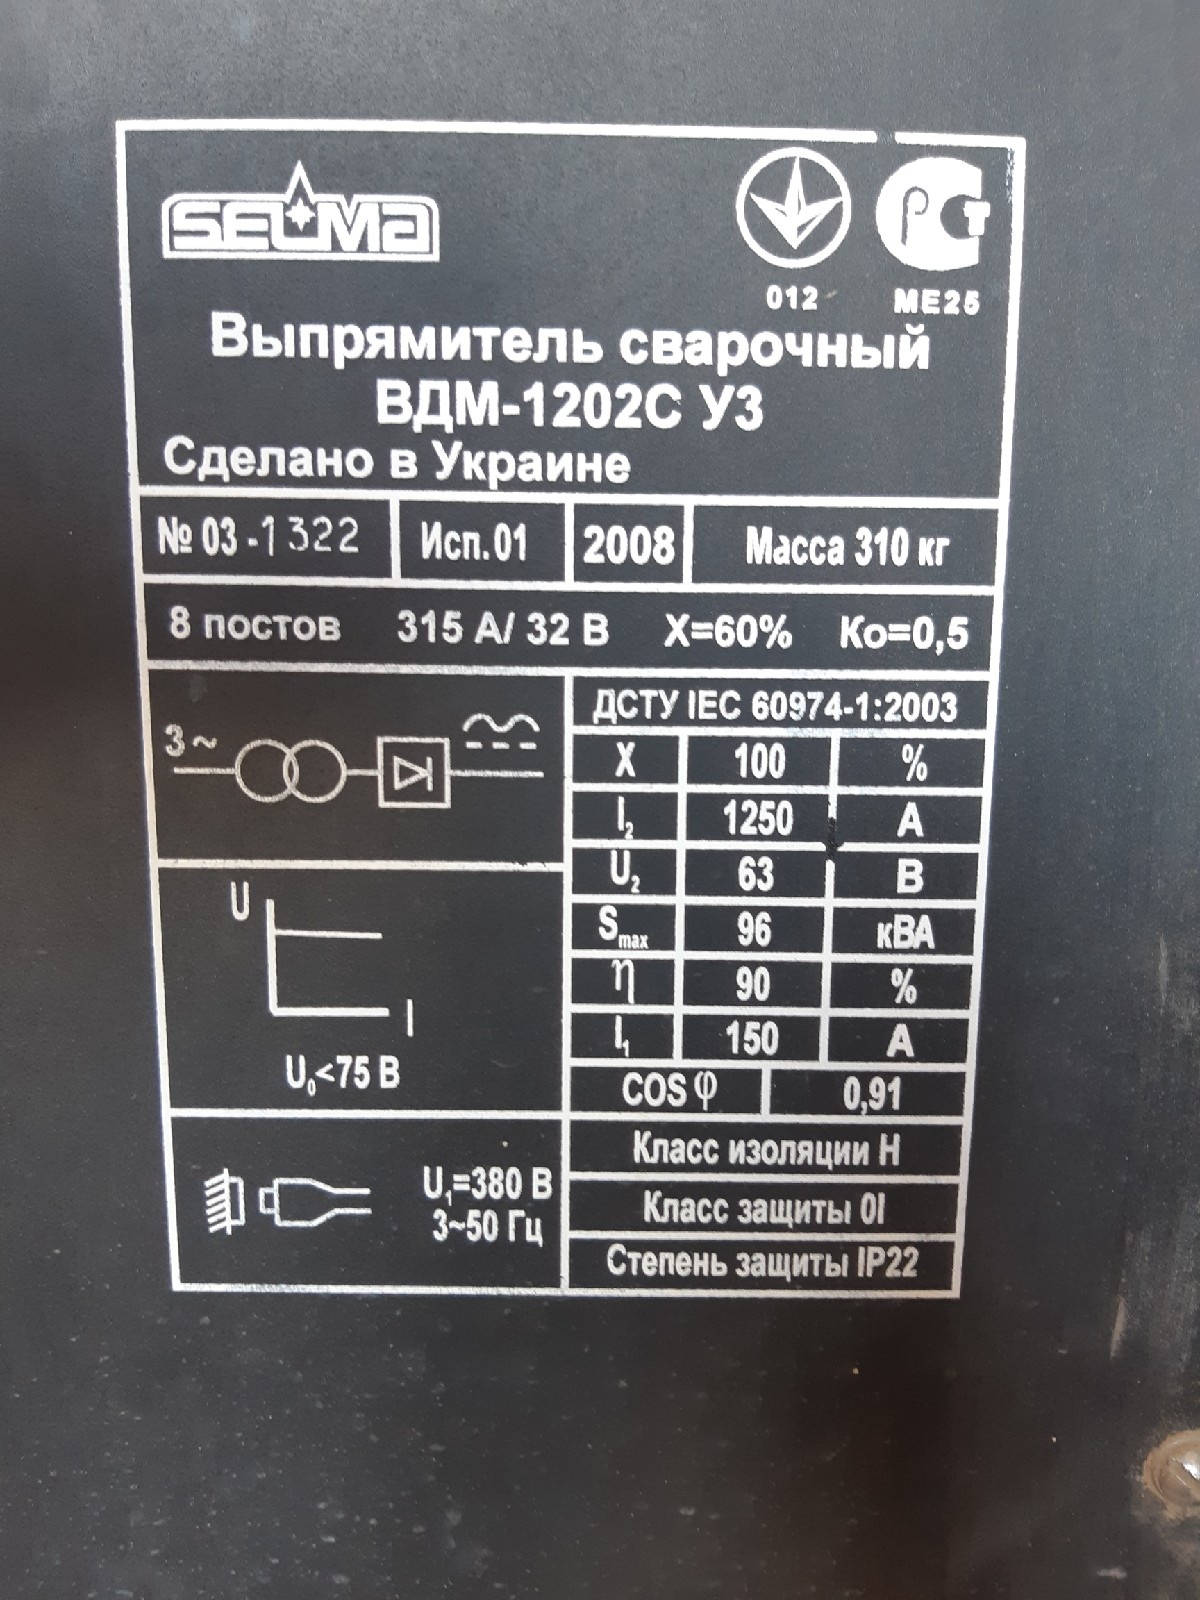  сварочный ВДМ-1202С УЗ Б/У - Биржа оборудования ProСтанки